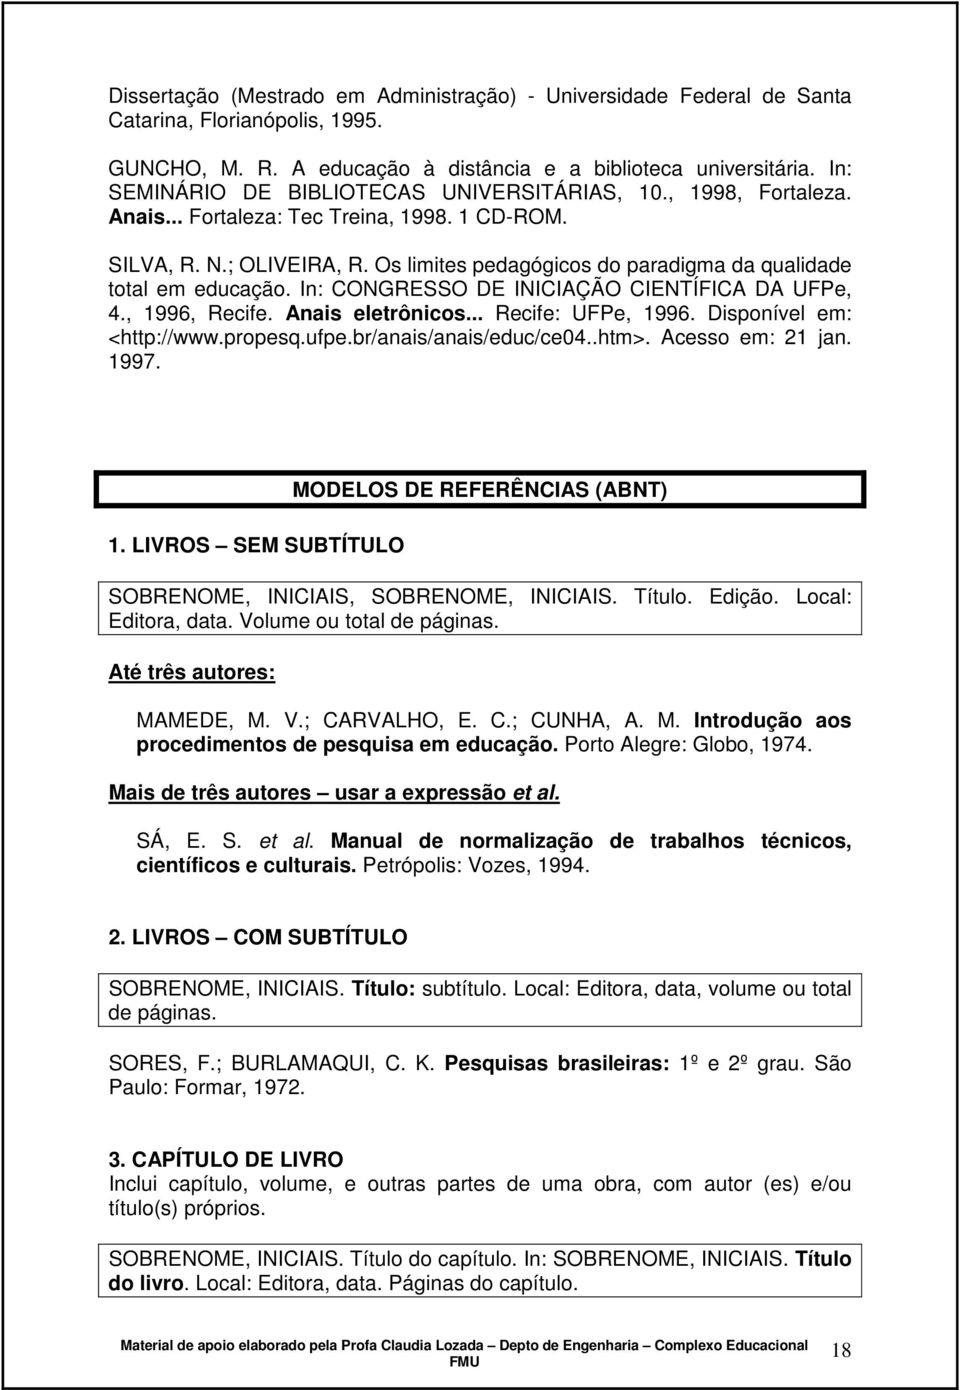 Os limites pedagógicos do paradigma da qualidade total em educação. In: CONGRESSO DE INICIAÇÃO CIENTÍFICA DA UFPe, 4., 1996, Recife. Anais eletrônicos... Recife: UFPe, 1996.